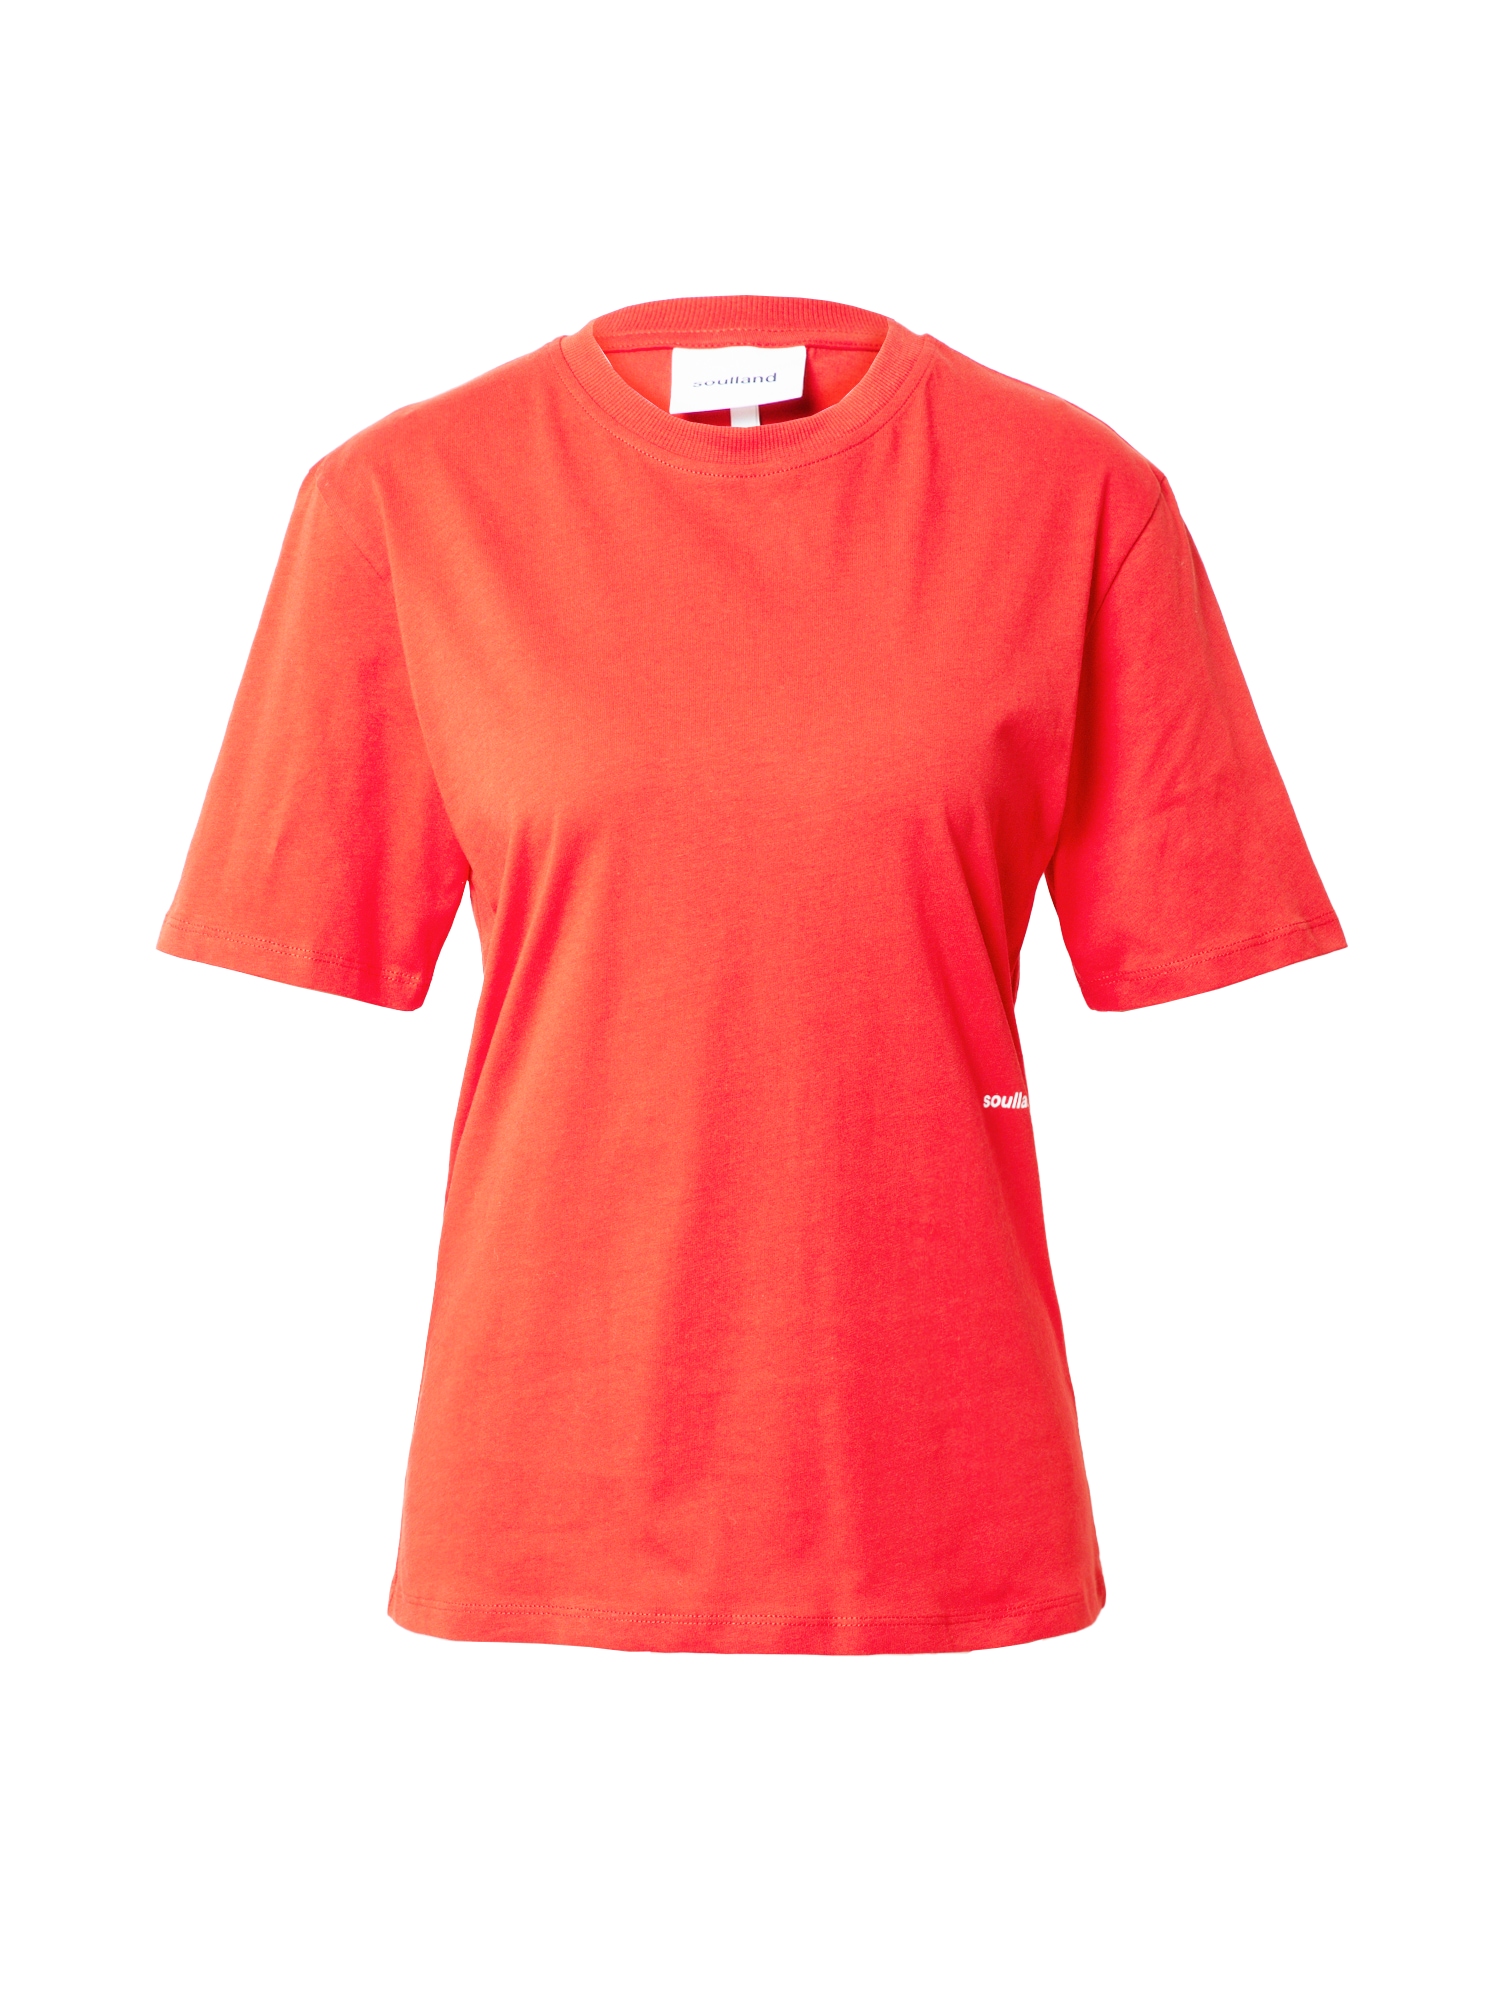 Soulland Marškinėliai 'Cea' pastelinė raudona / balta